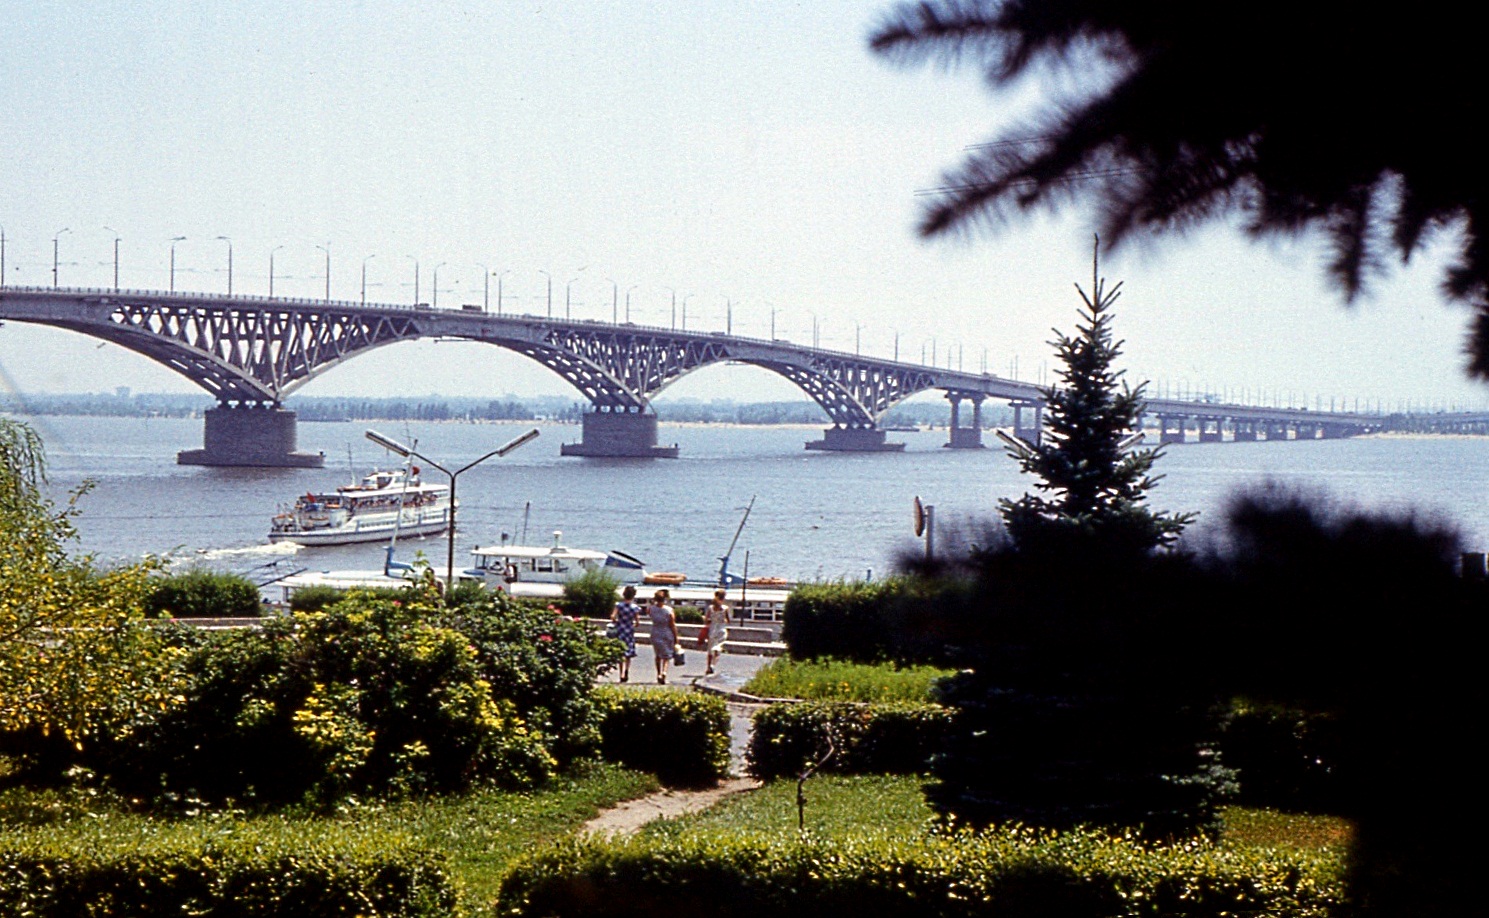 Саратов мост через волгу фото